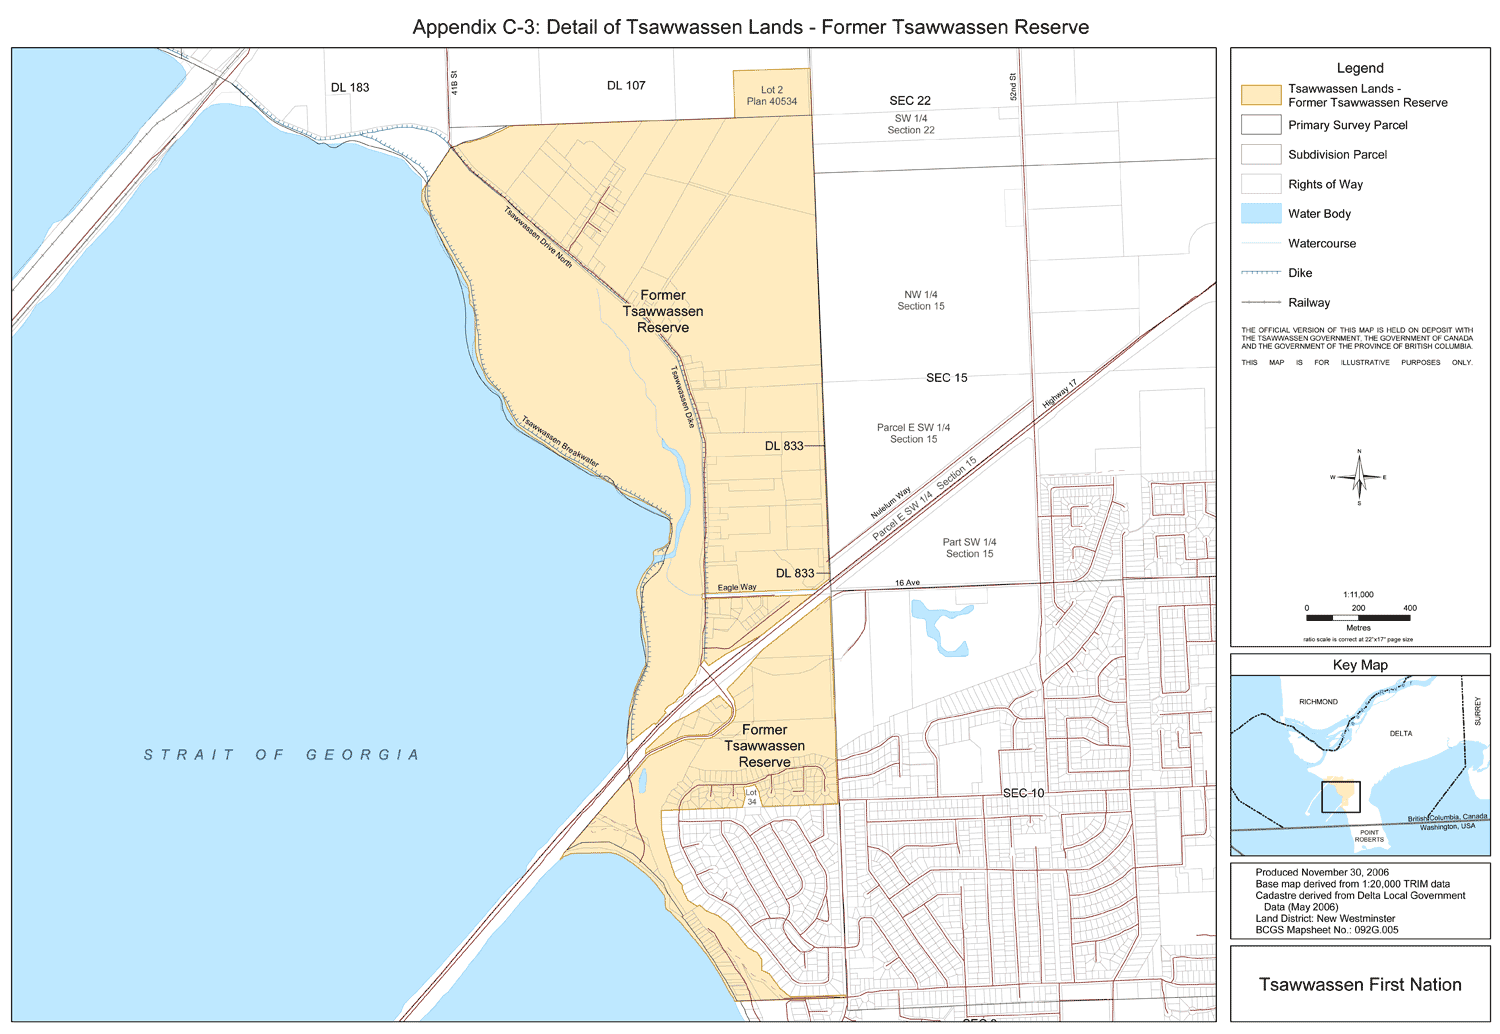 Appendix C-3: Detail of Tsawwassen Lands - Former Tsawwassen Reserve